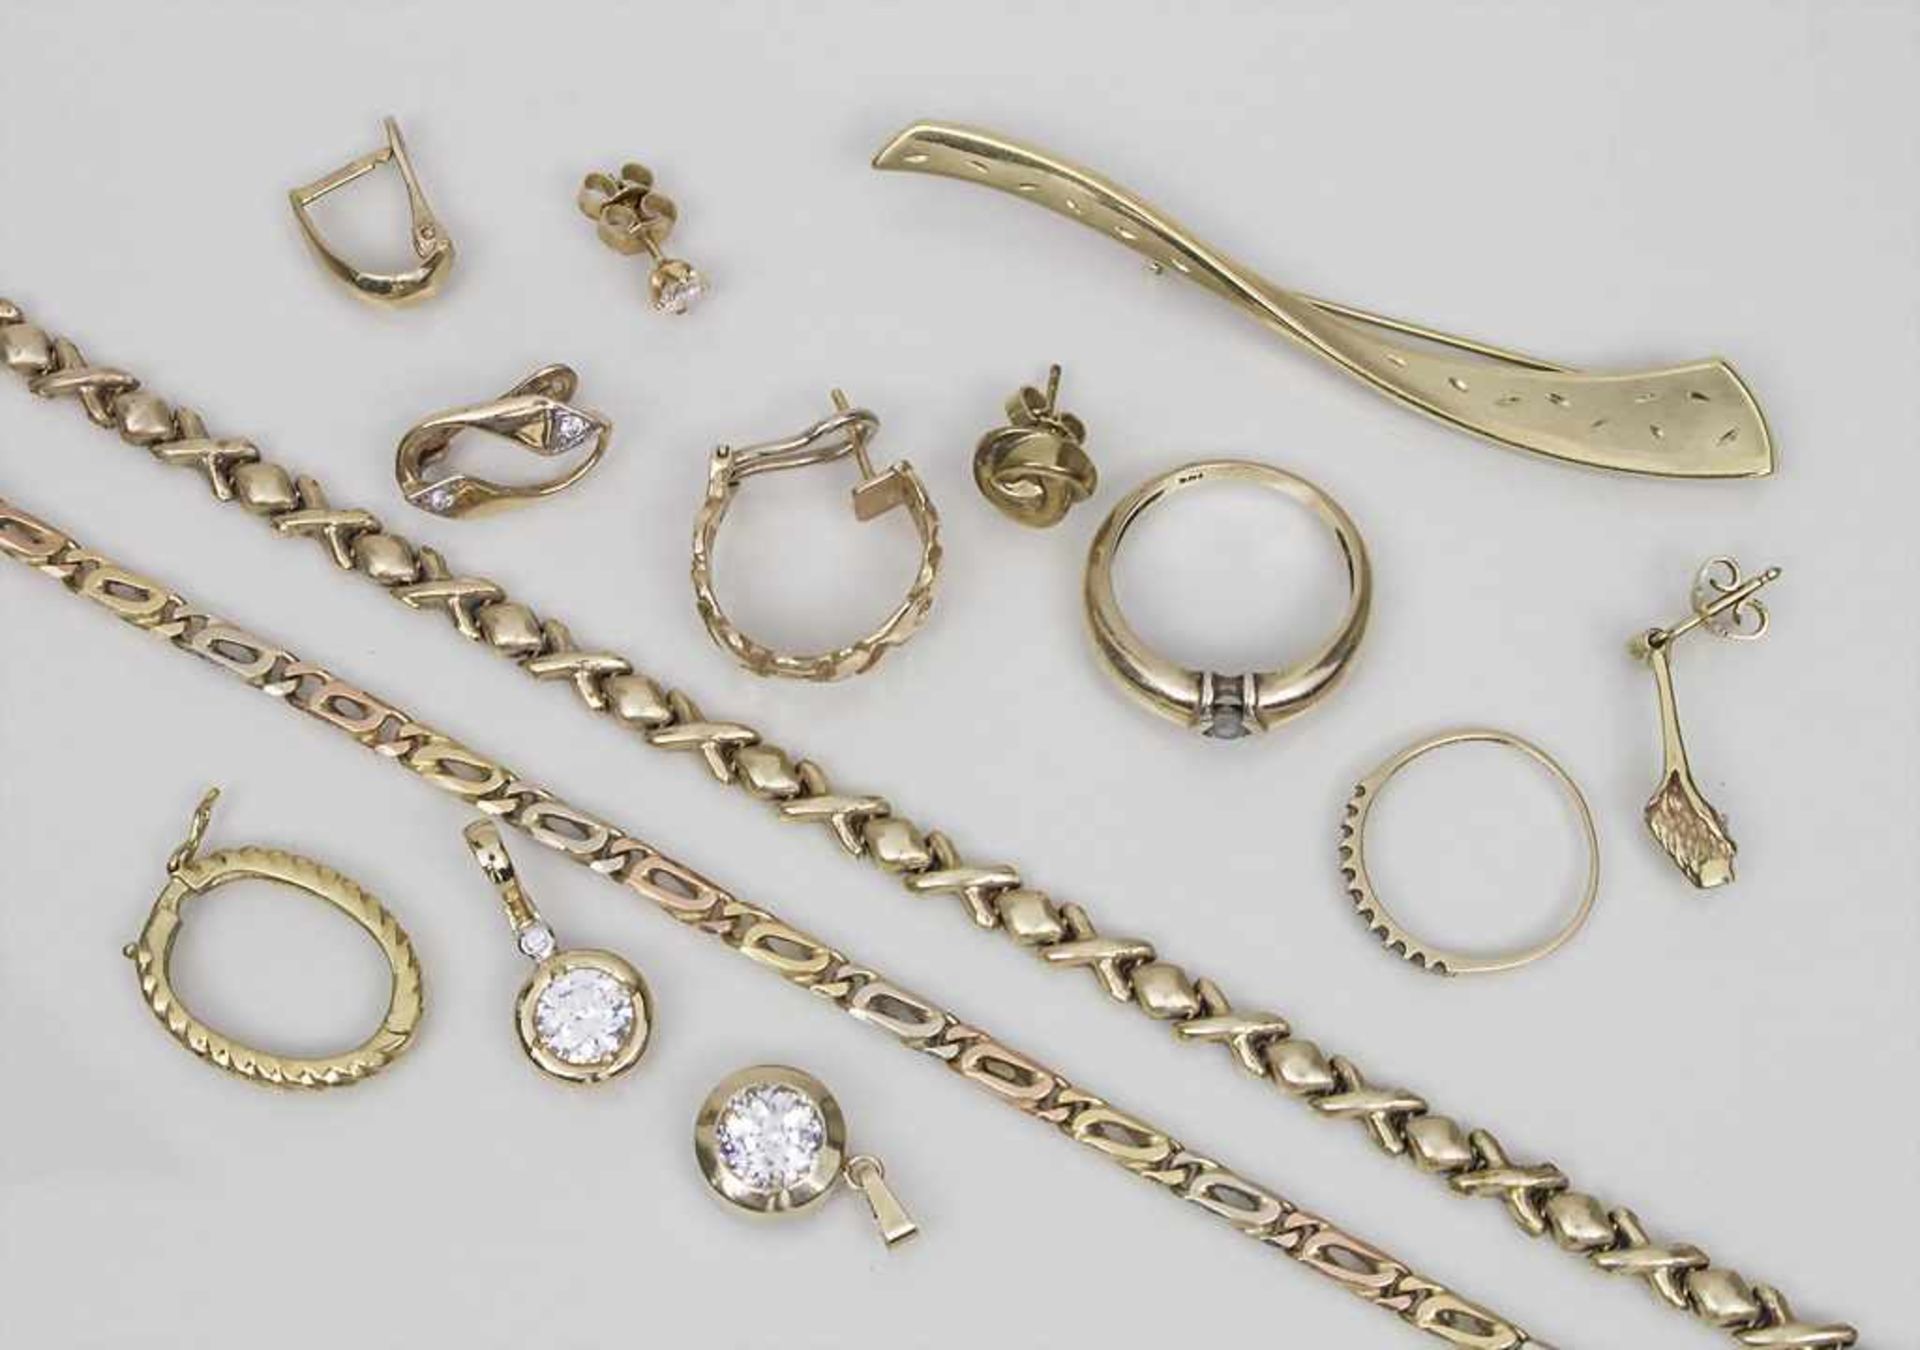 Lot Schmelzgold / Melting Gold bestehend aus: 2 Armbändern, 2 Ringen, 1 Anstecknadel, 6 einzelnen